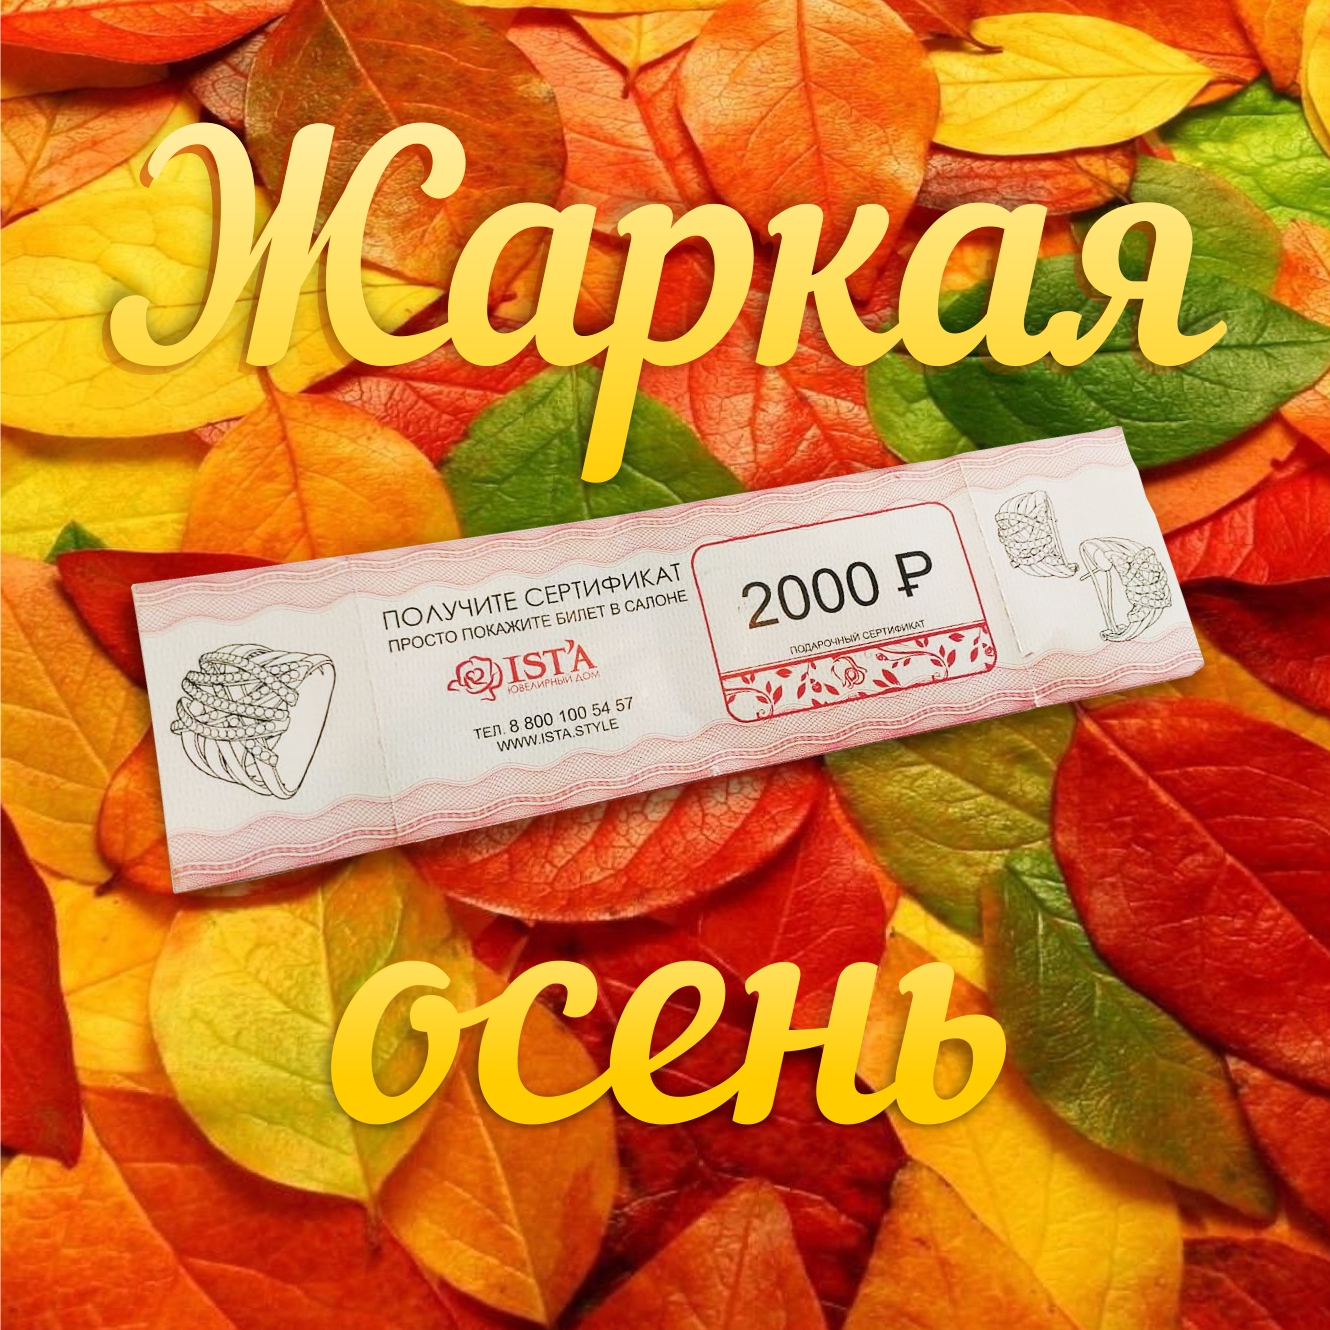 Приморская краевая филармония и ювелирный дом «ISTA» объявляют акцию «Жаркая осень»! 